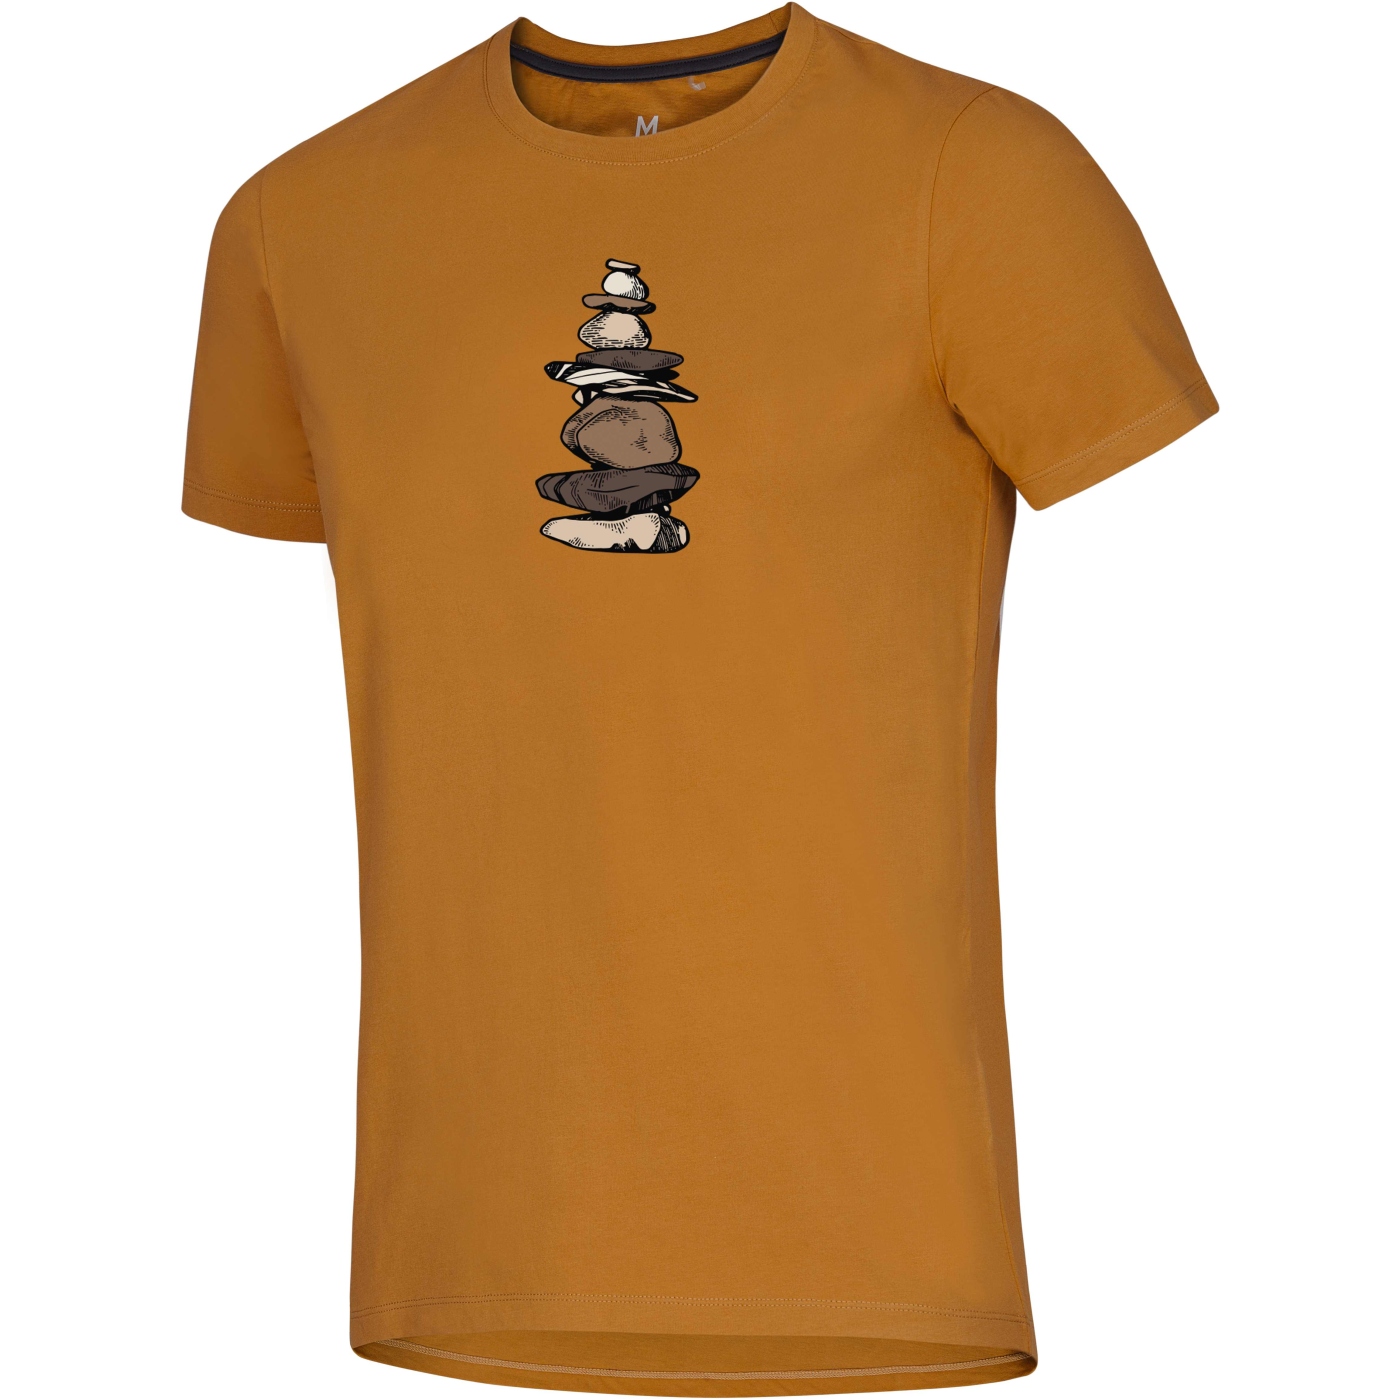 Produktbild von Ocún Classic T - T-Shirt Herren - Stoneman - Brown Bronze